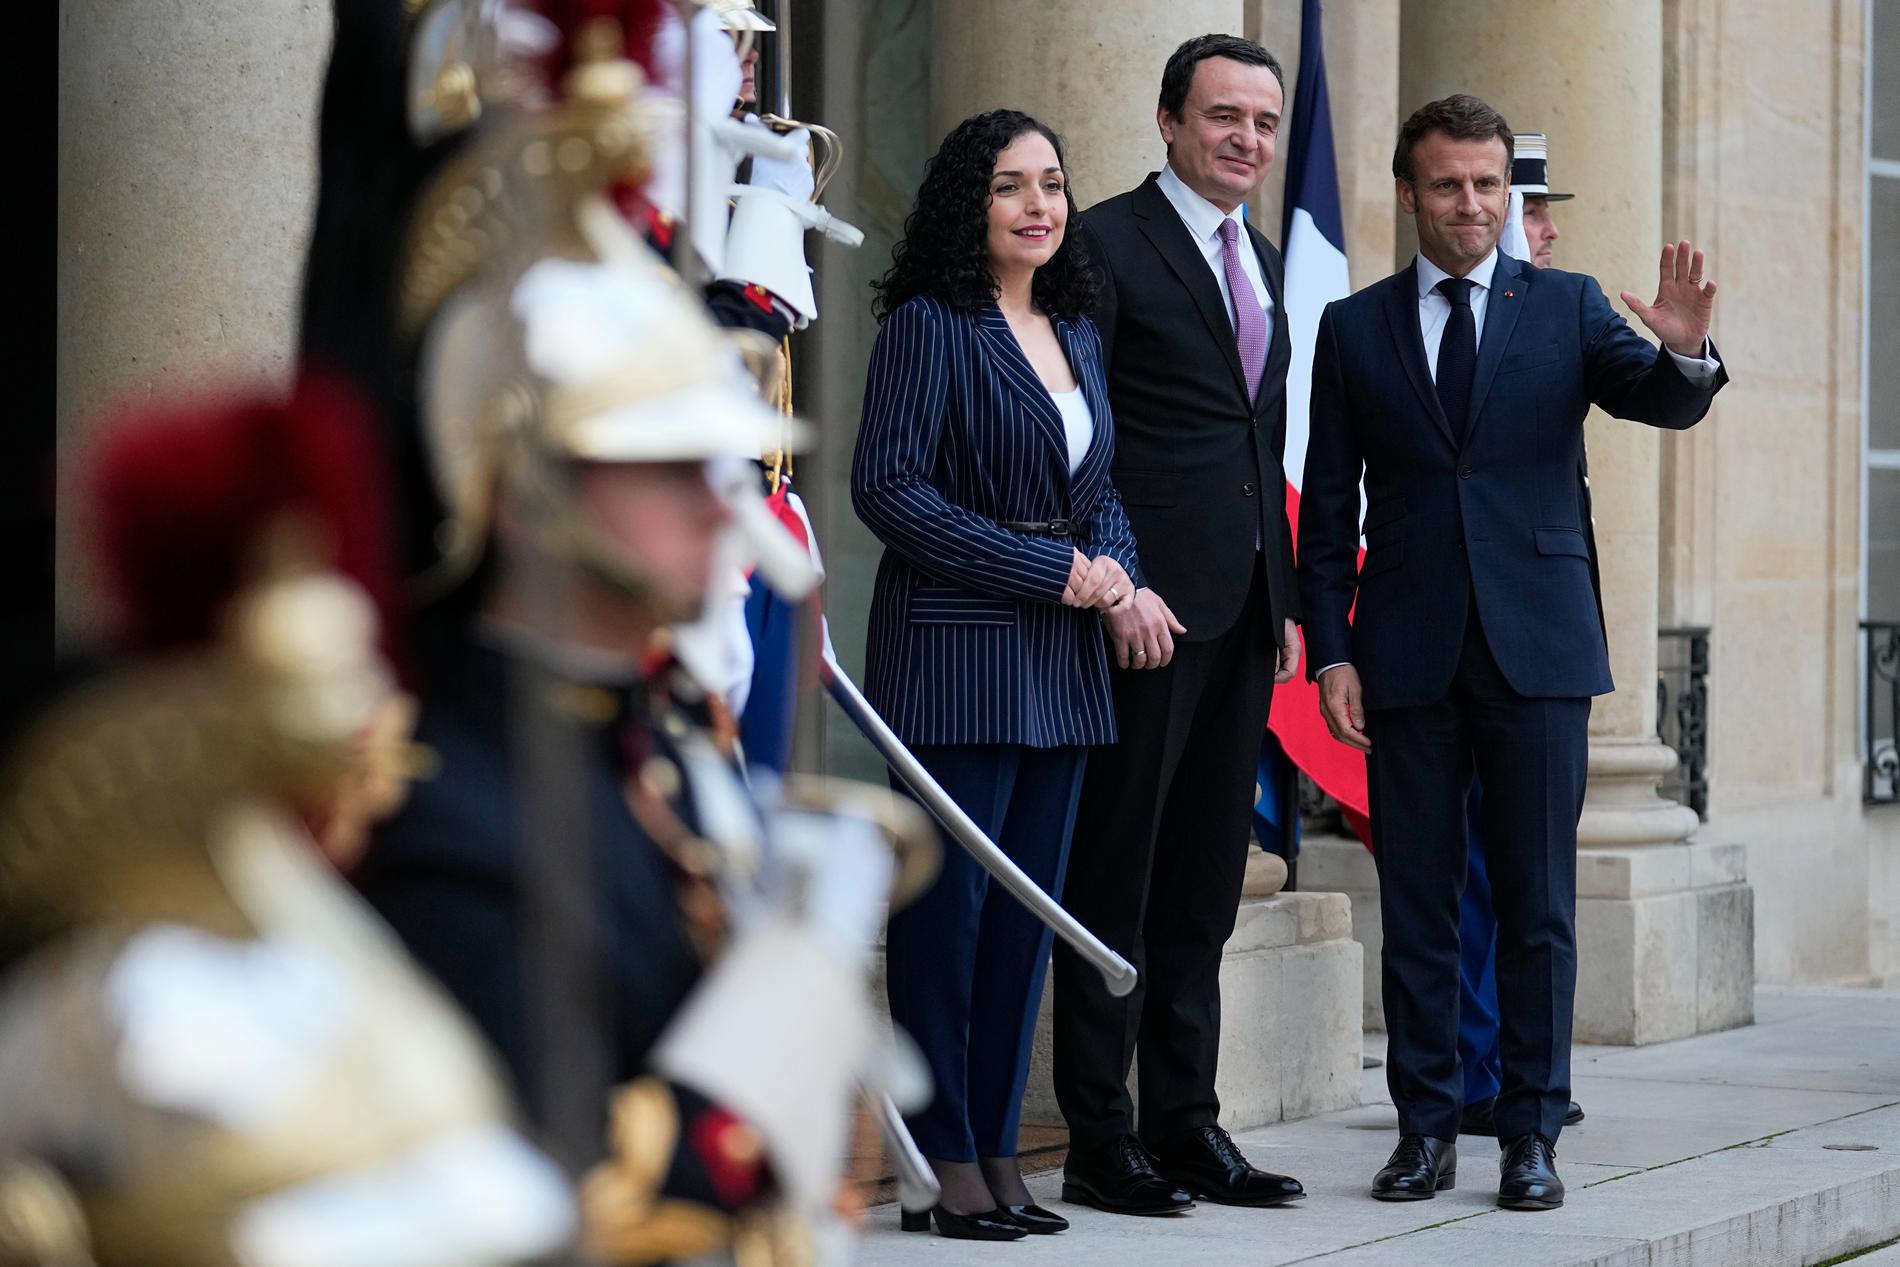 Kosovos president Vjosa Osmani och premiärminister Albin Kurti vid ett möte med Frankrikes president Emmanuel Macron i Paris tidigare i november.